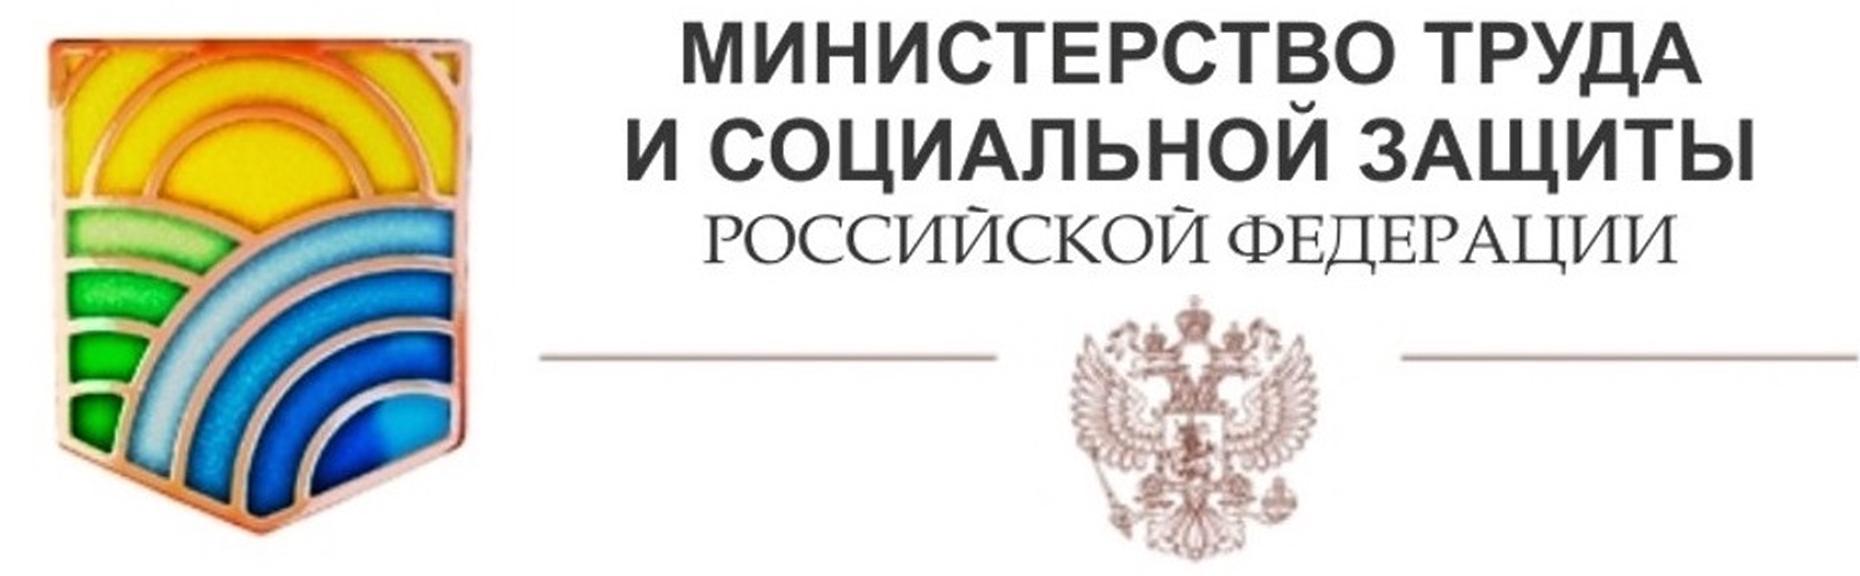 Закон о занятости населения в РФ в 2021 году: основные положения и изменения